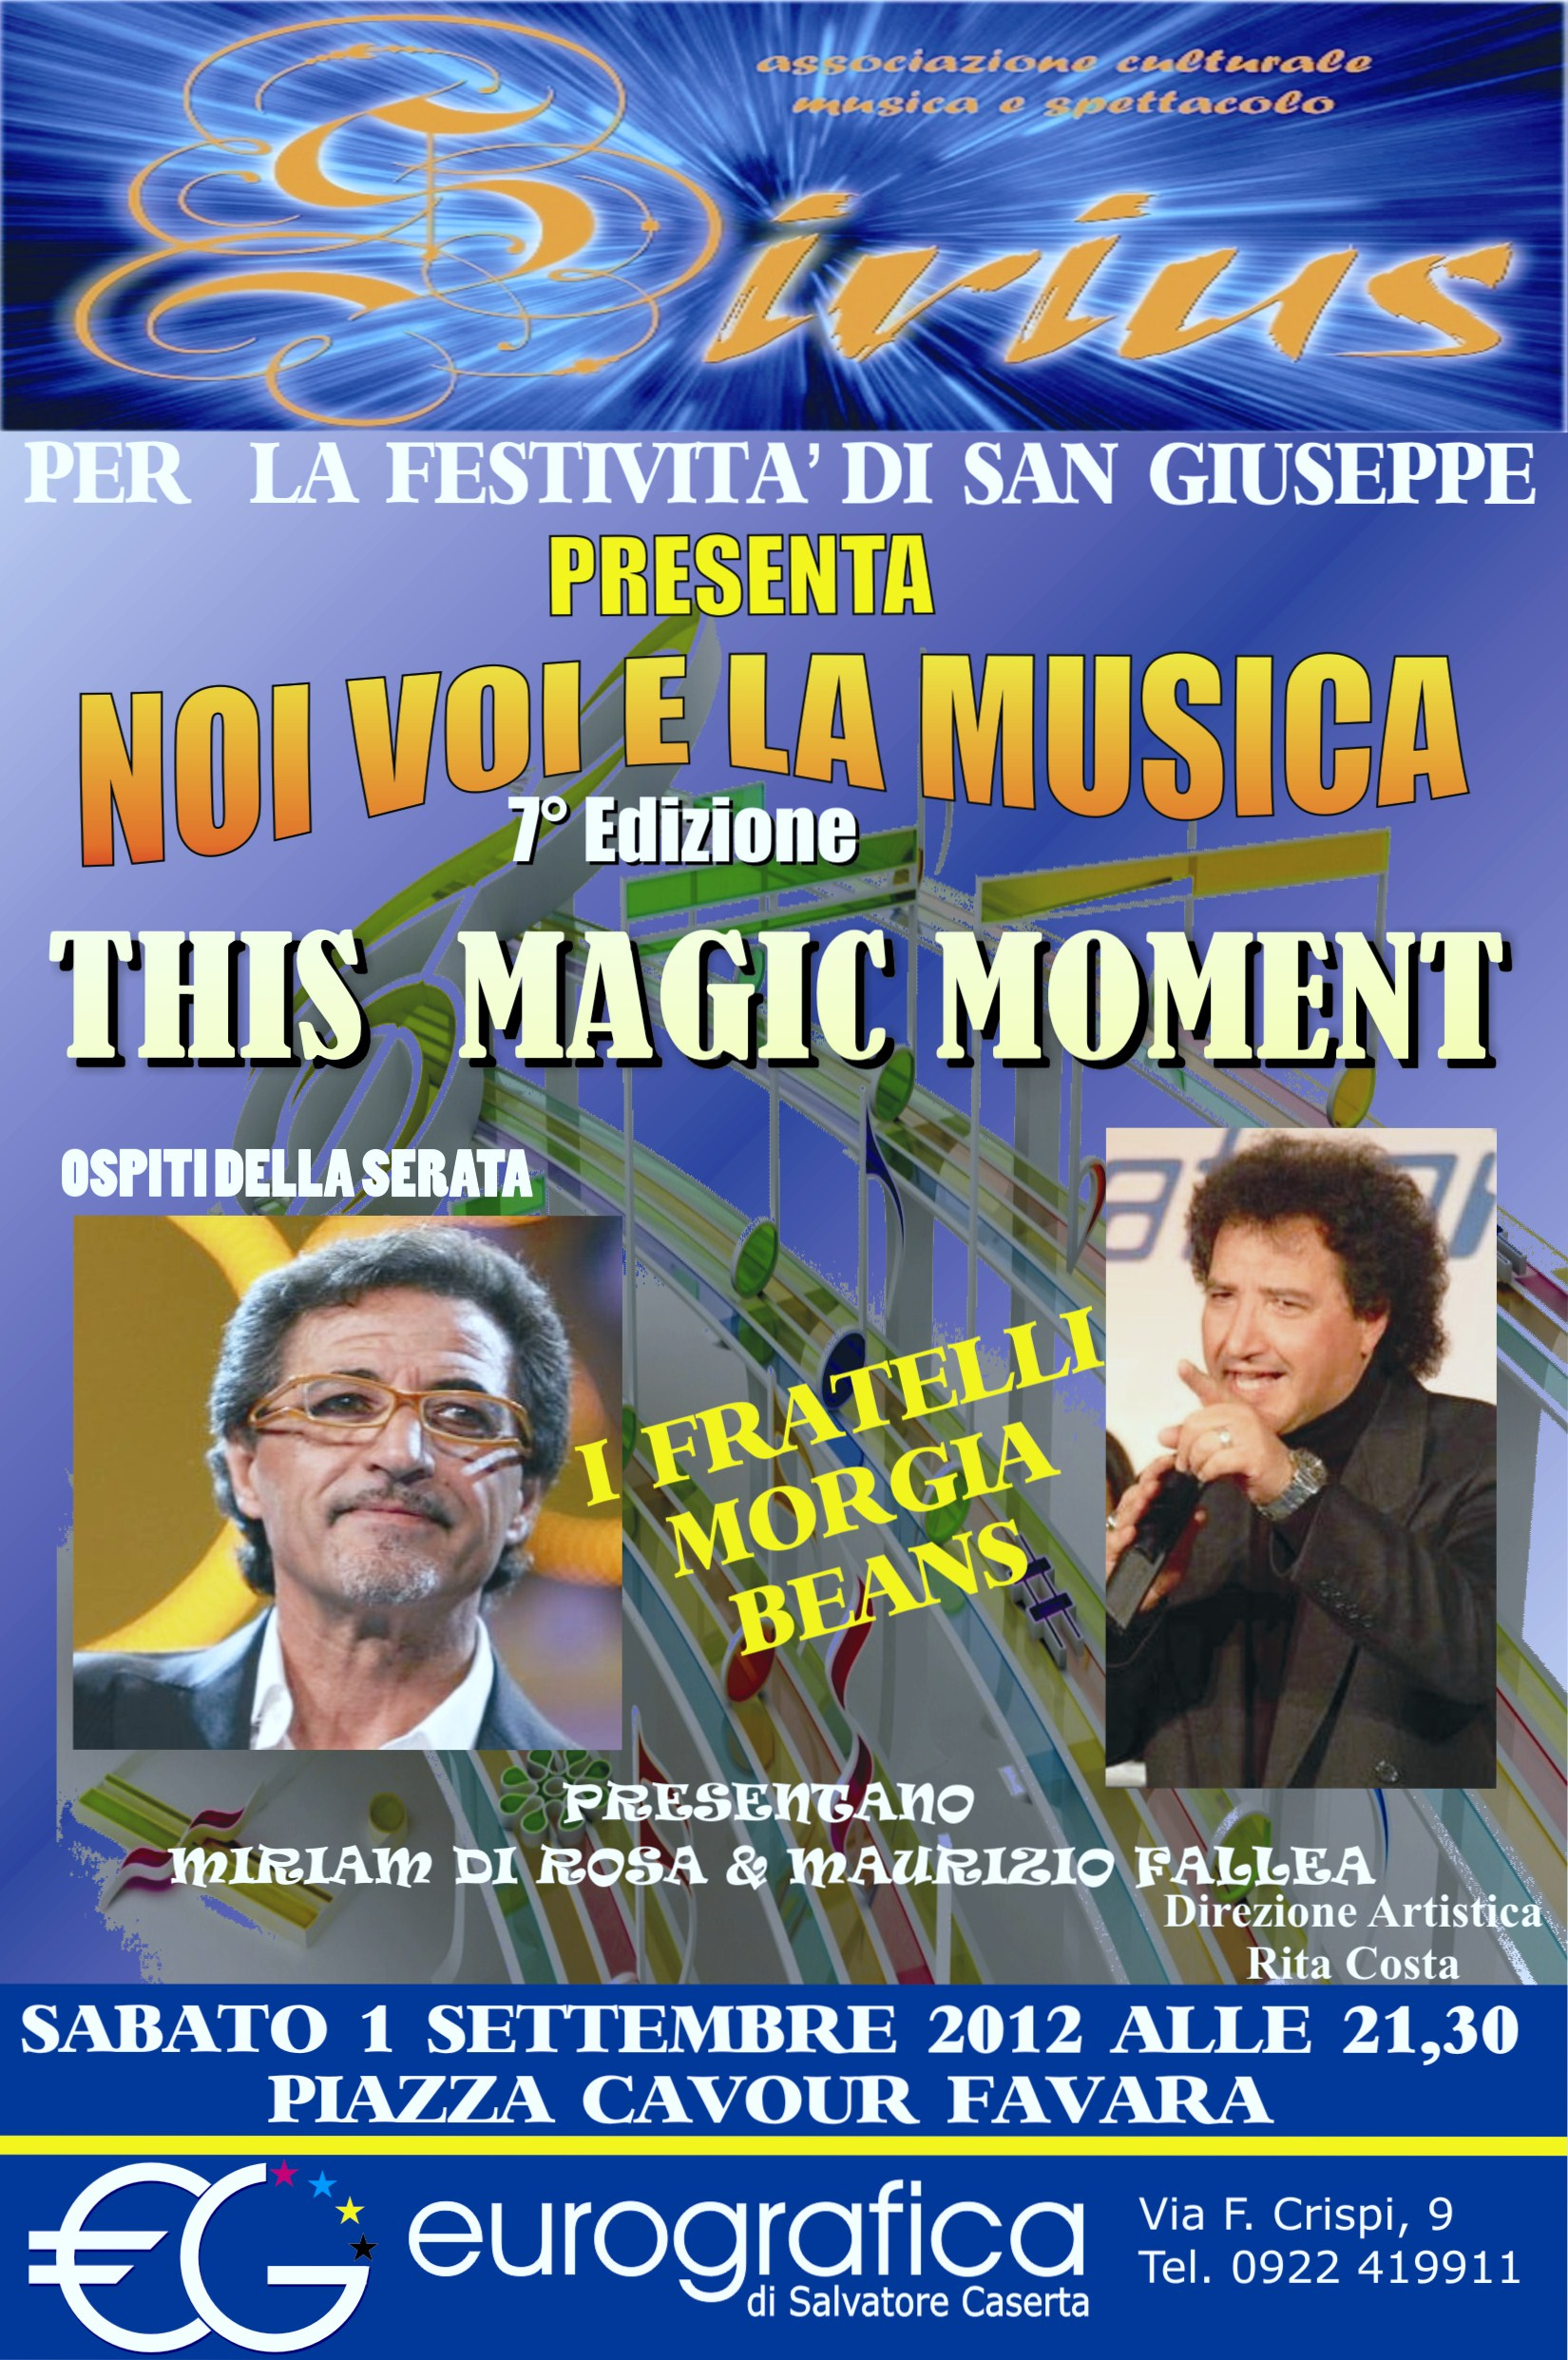 ''This Magic Moment'' lo spettacolo della scuola di canto Sirius sabato sera a Favara